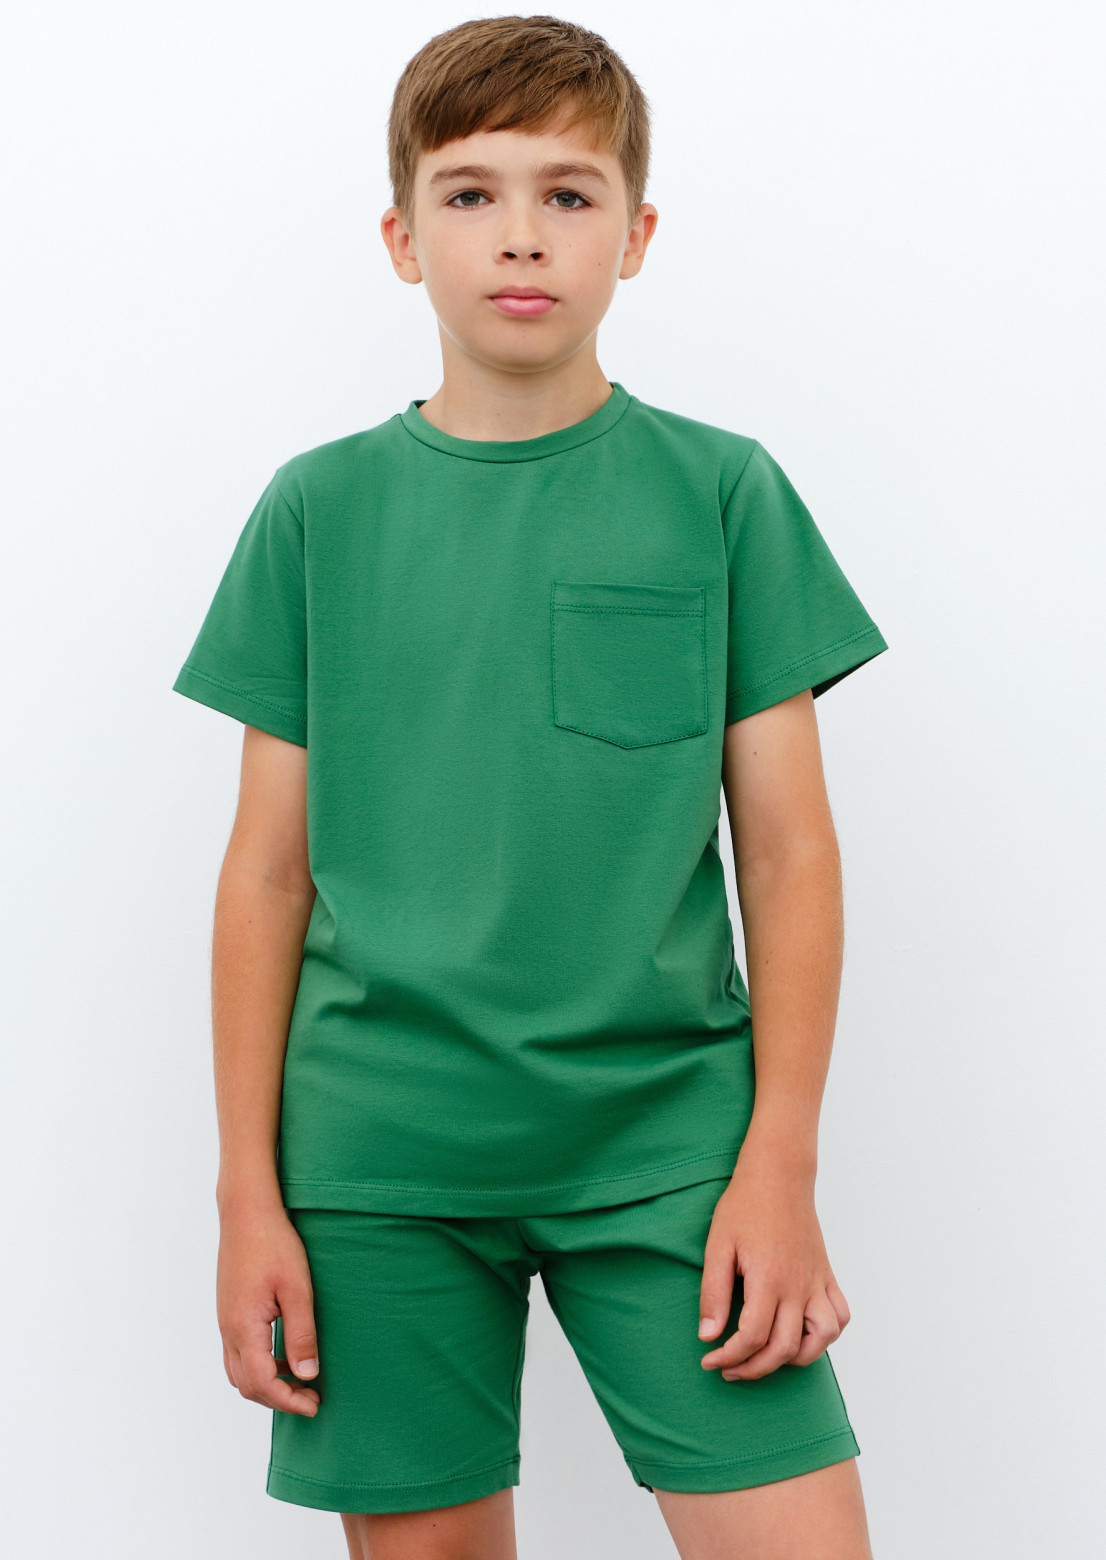 Green kids T-shirt 